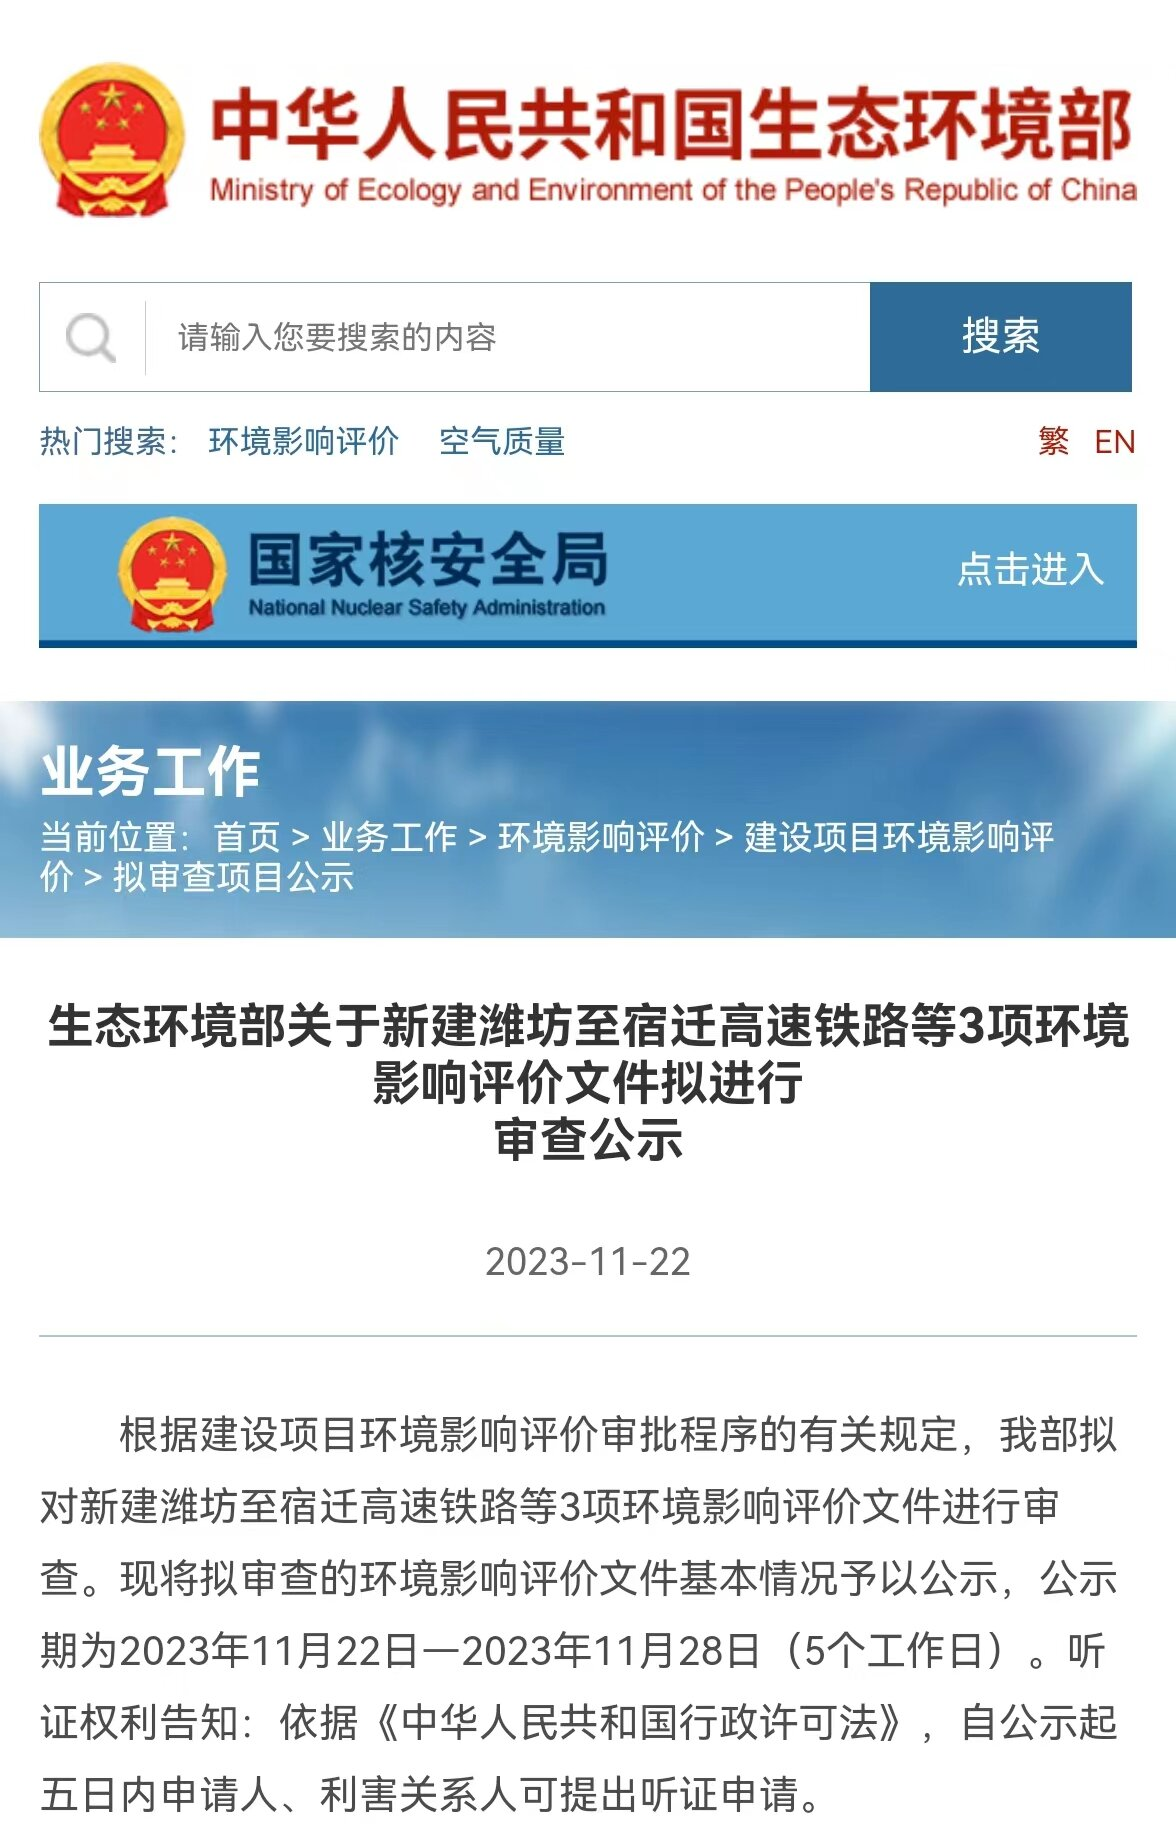 京沪高铁二线潍宿高铁环评公示结束，底前“年底前施工”再进一步